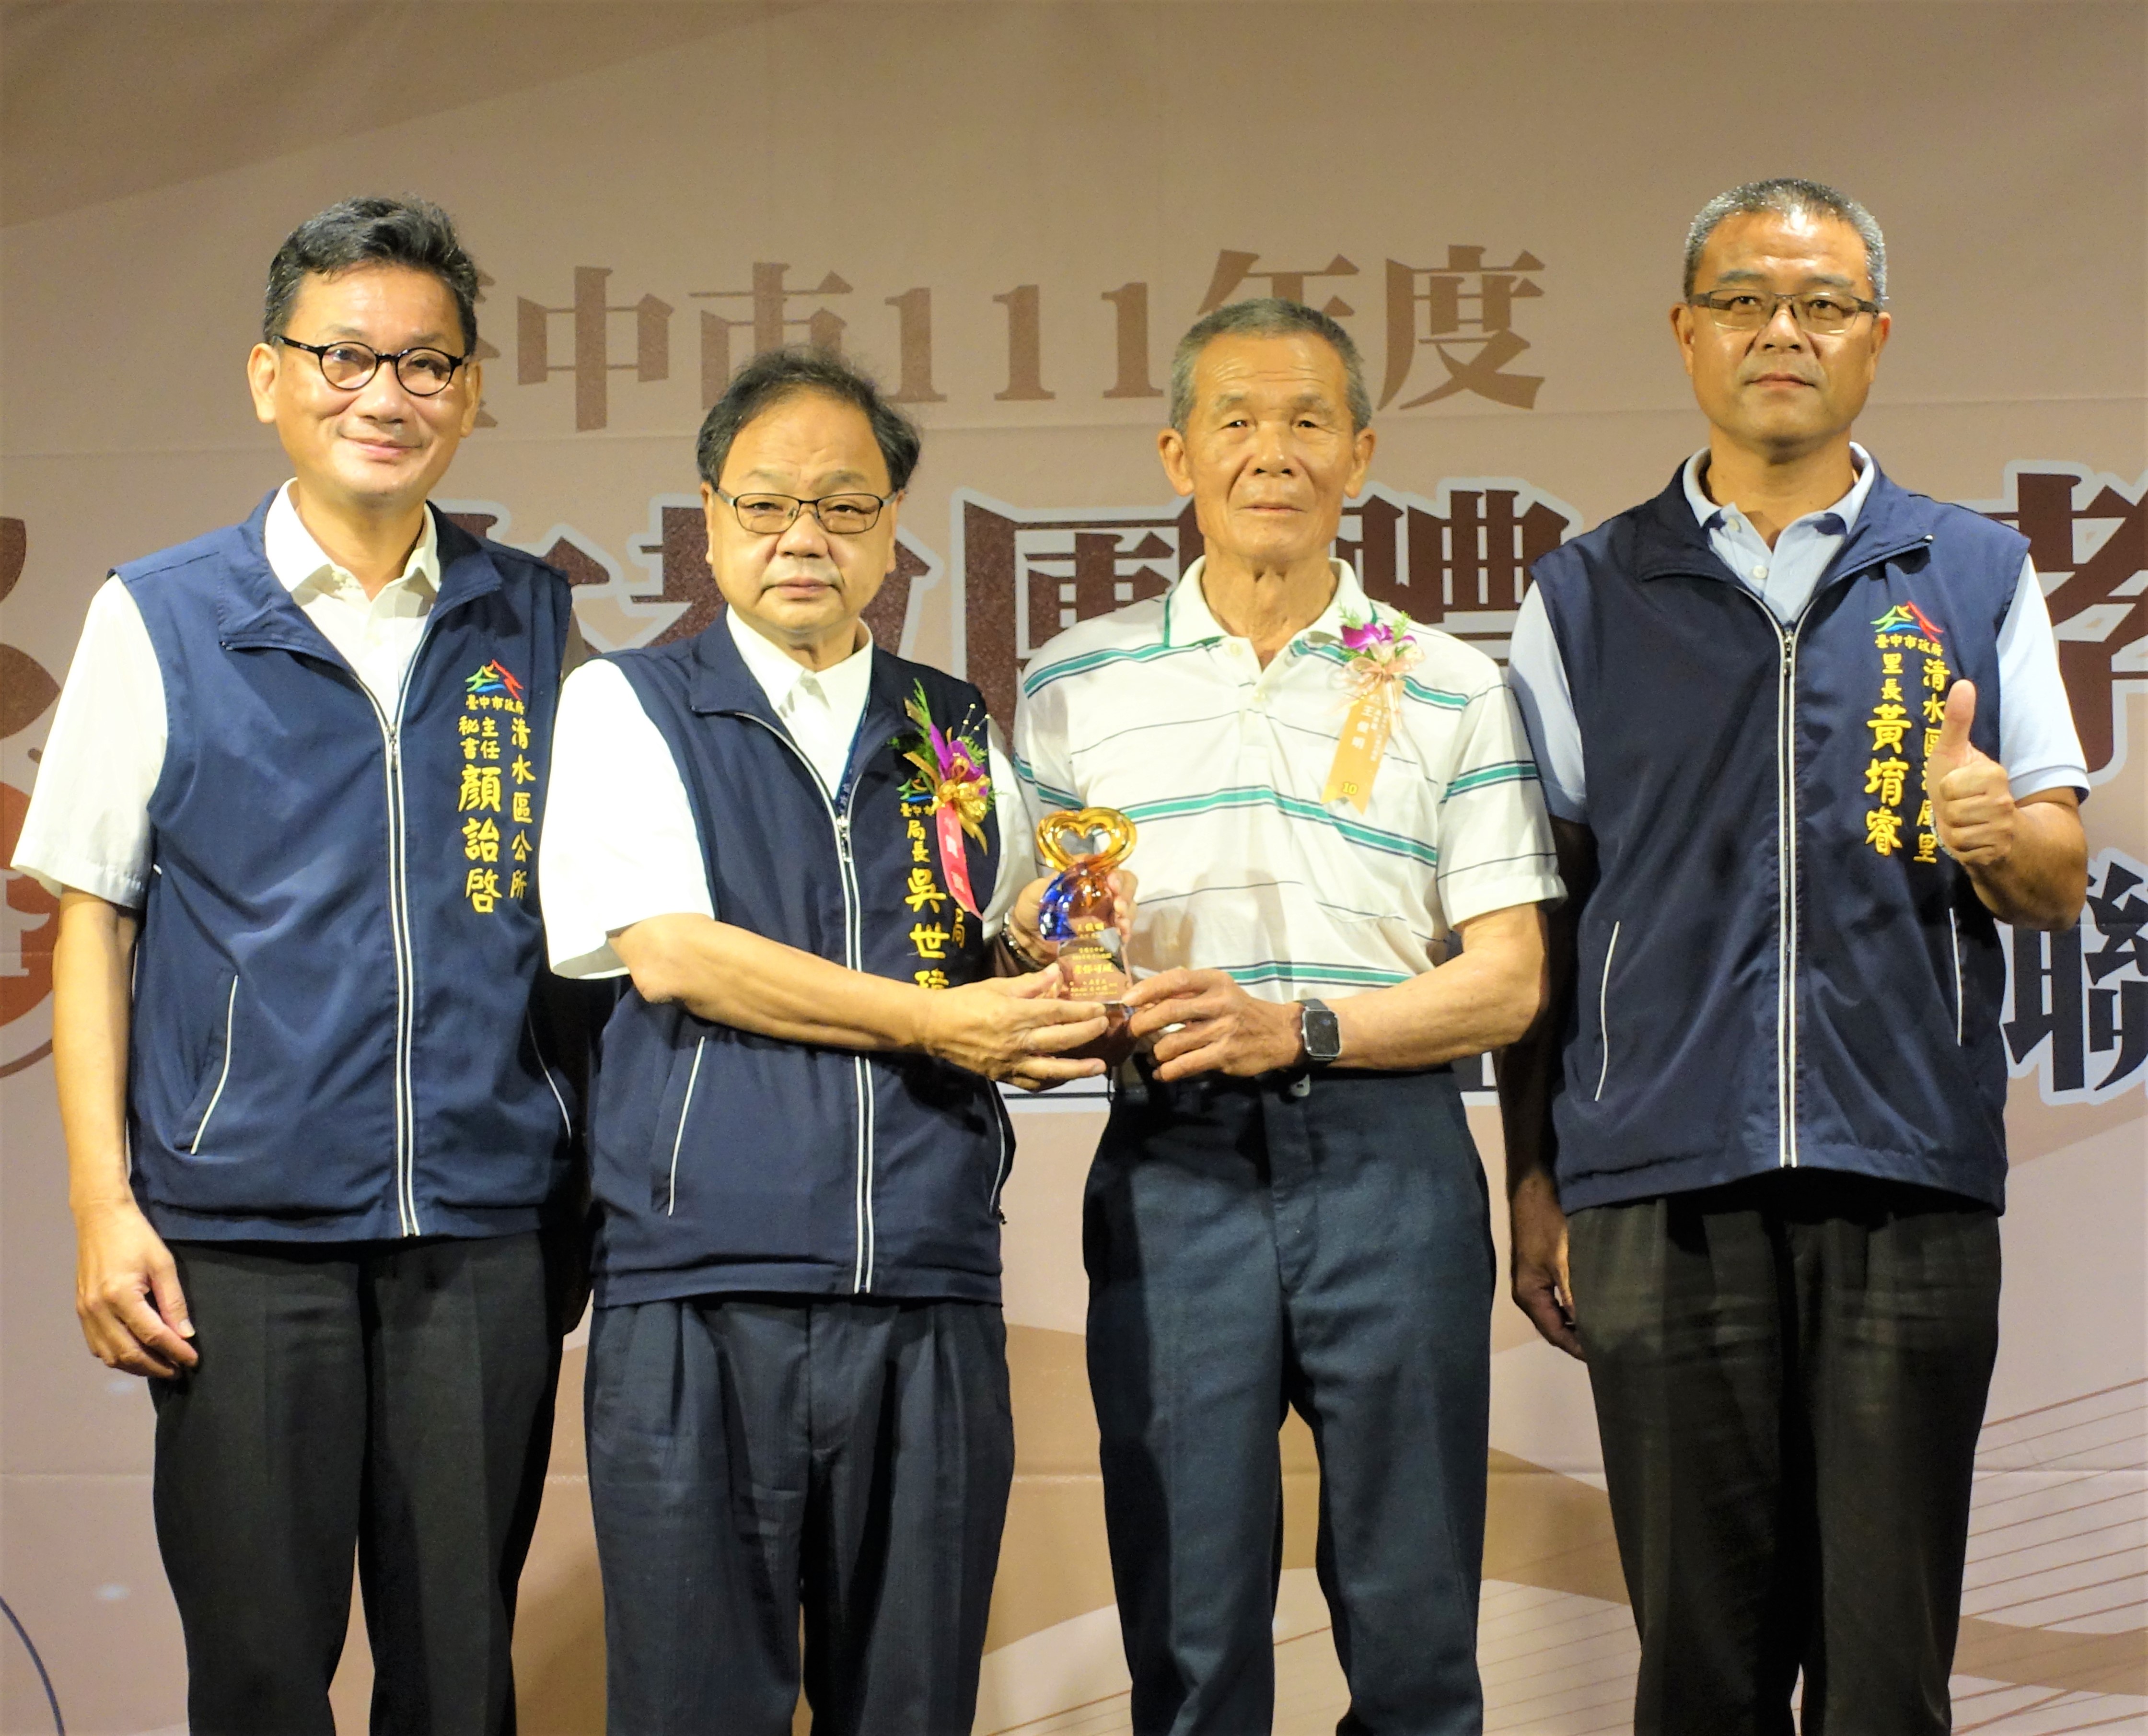 清水區王俊明先生為今年度最年長孝行楷模，同時榮獲全國孝行獎